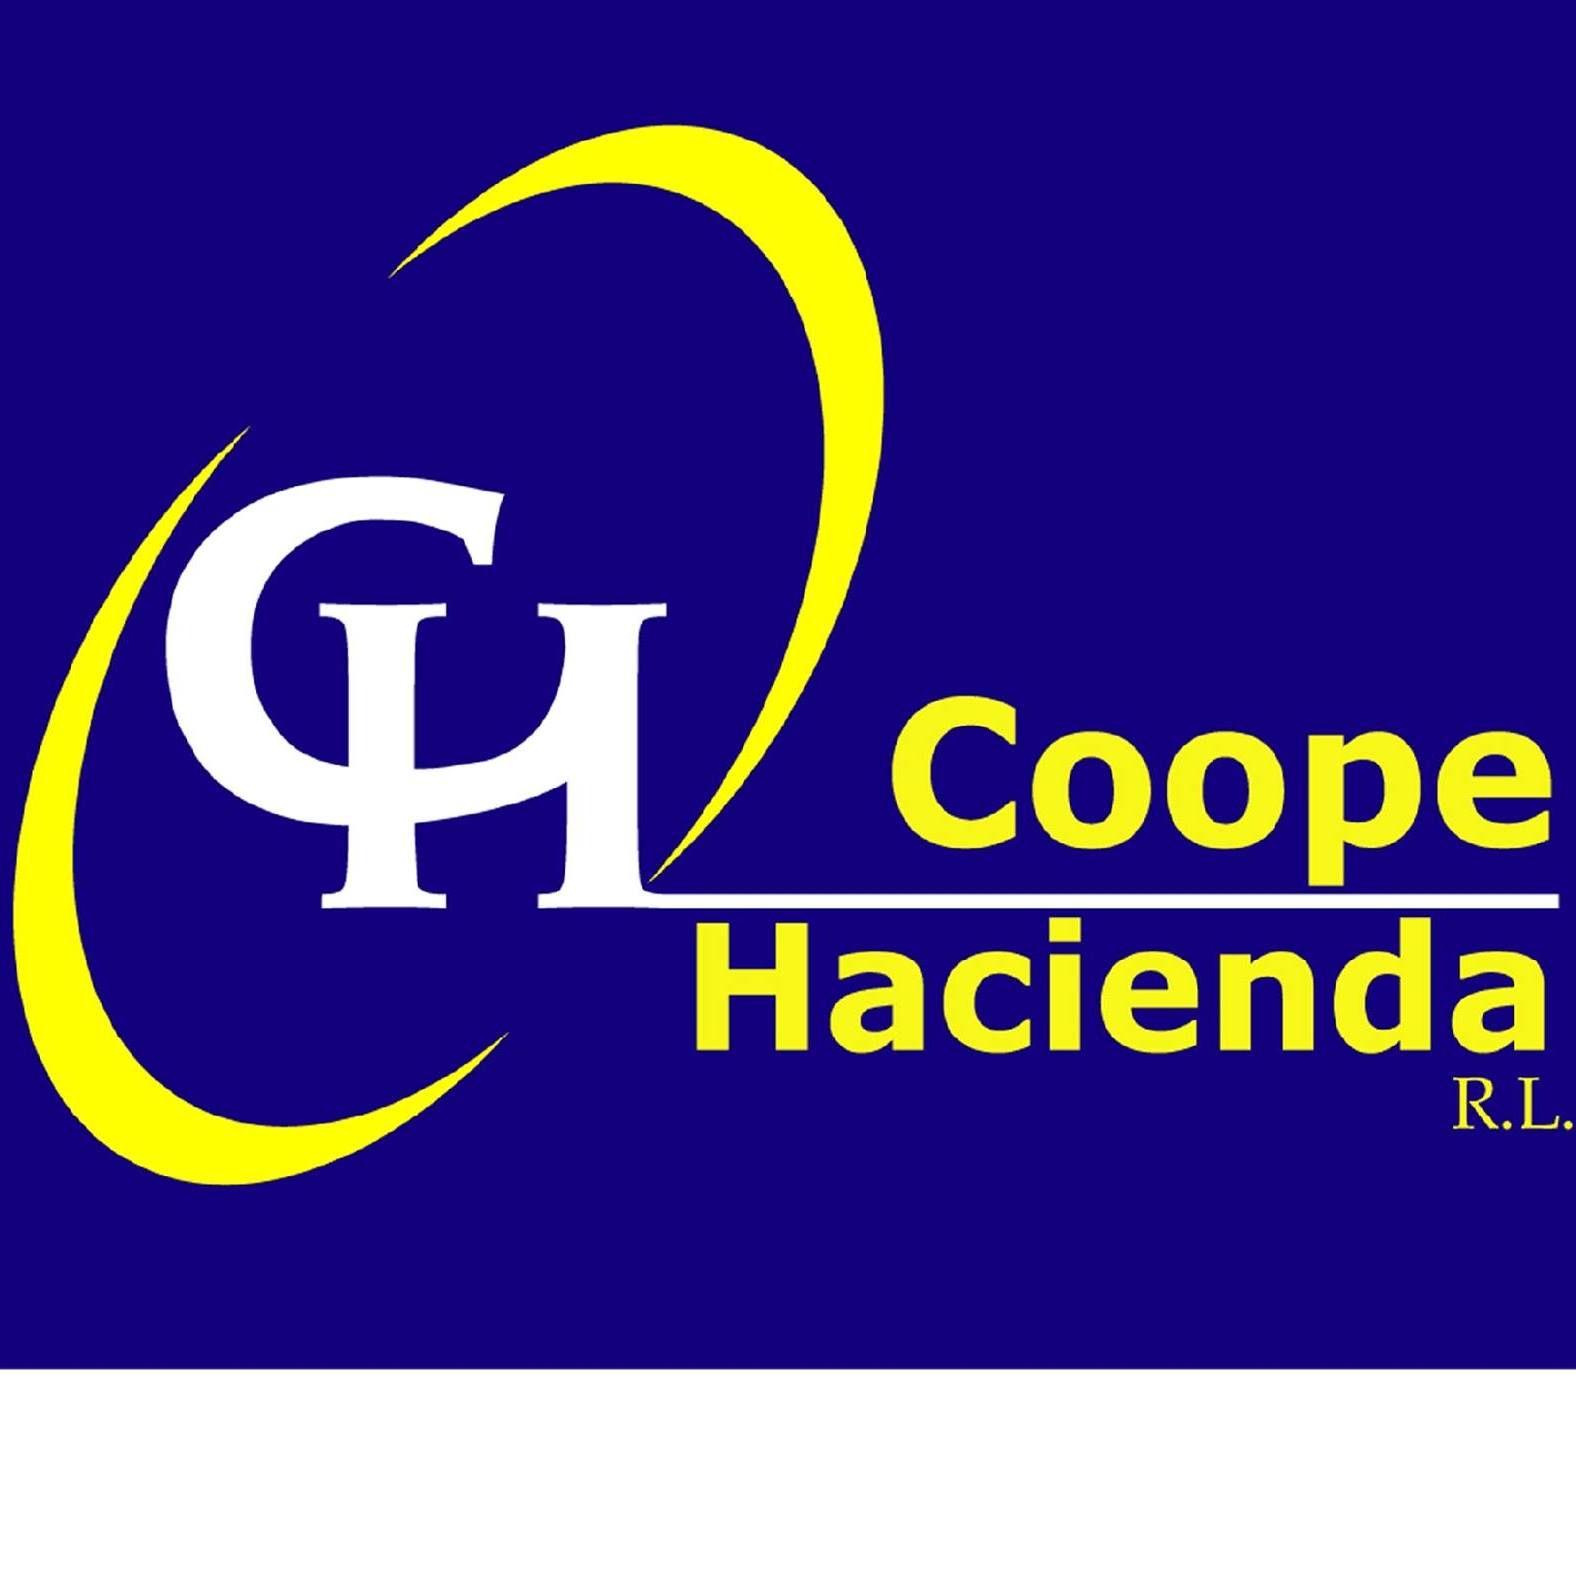 COOPEHACIENDA, R.L.